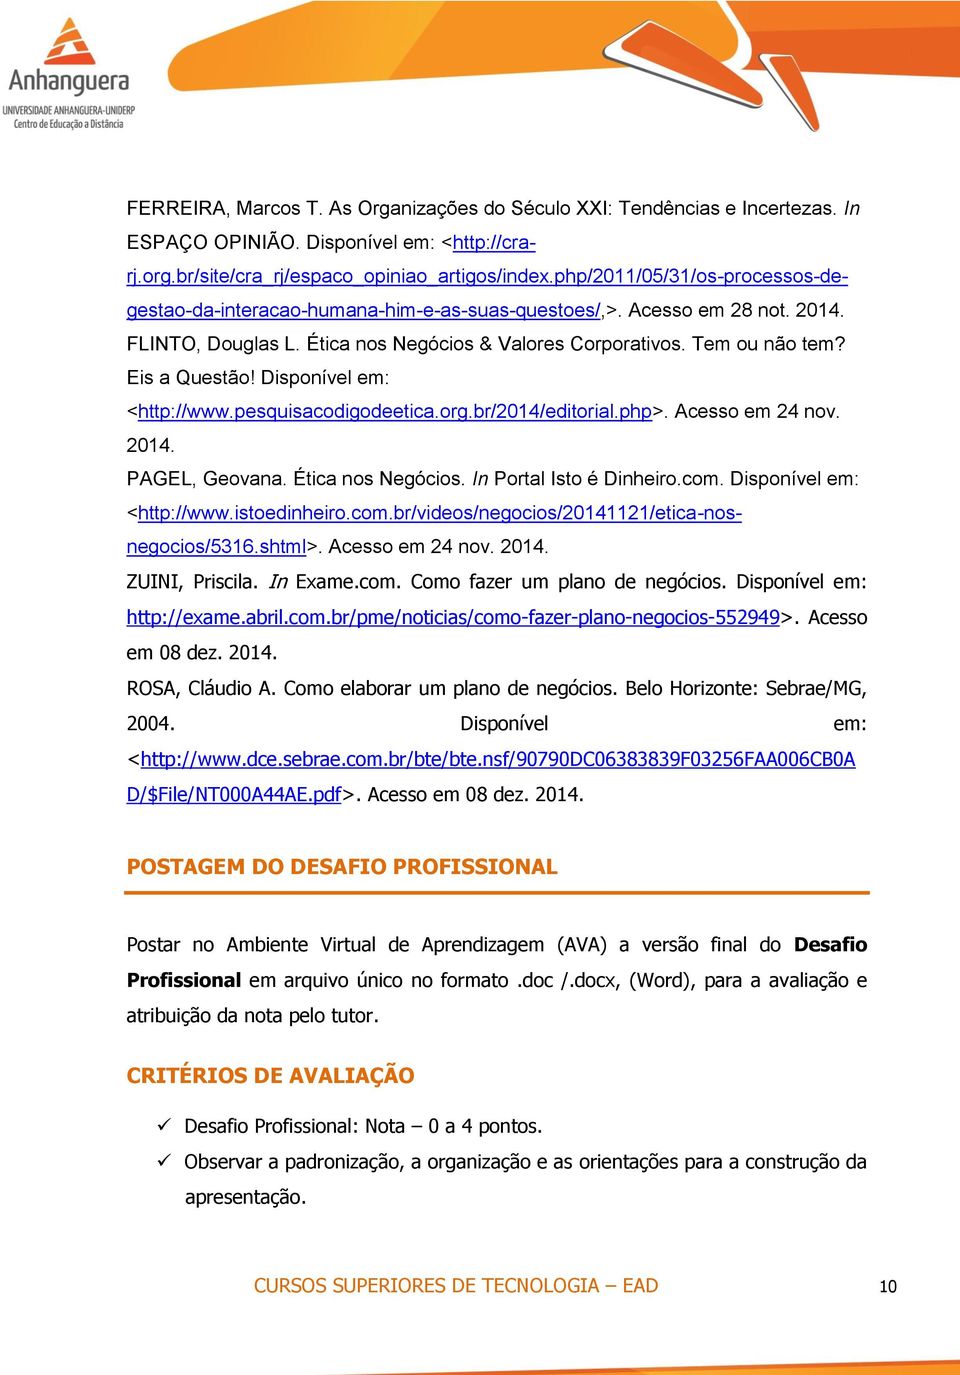 Disponível em: <http://www.pesquisacodigodeetica.org.br/2014/editorial.php>. Acesso em 24 nov. 2014. PAGEL, Geovana. Ética nos Negócios. In Portal Isto é Dinheiro.com. Disponível em: <http://www.